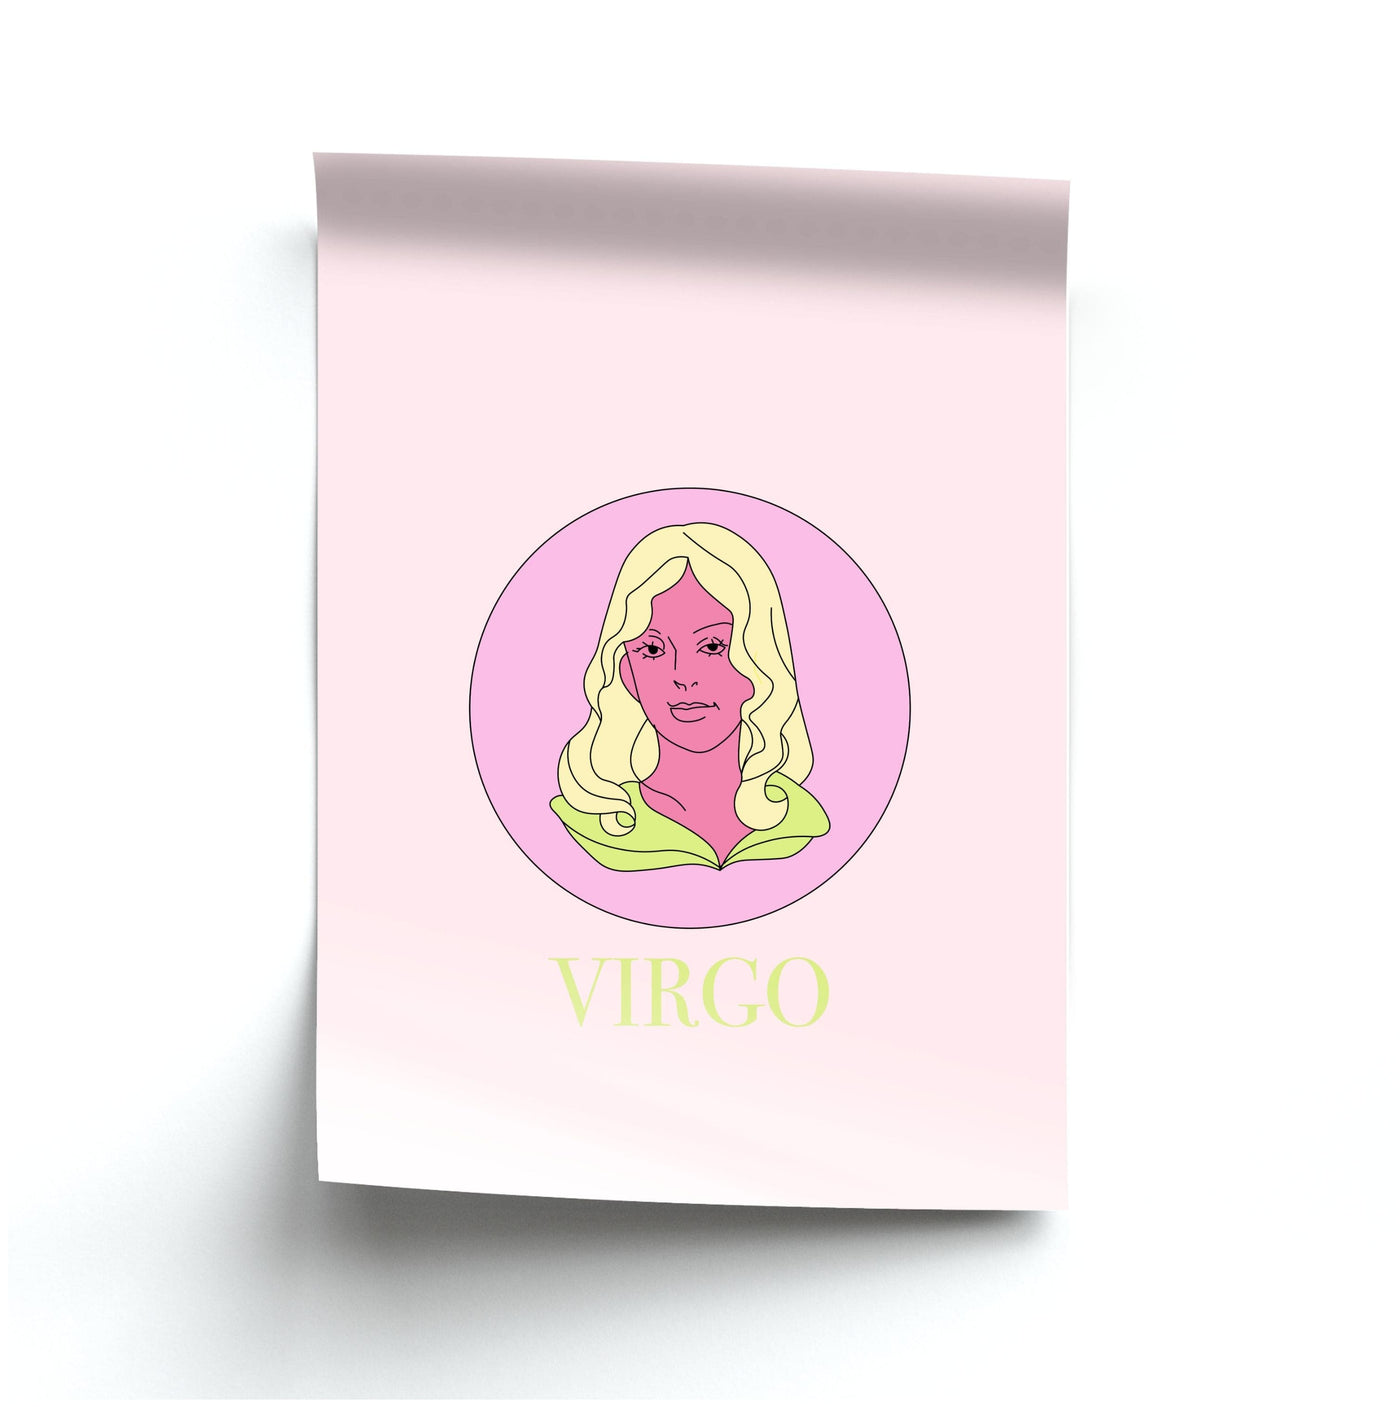 Virgo - Tarot Cards Poster